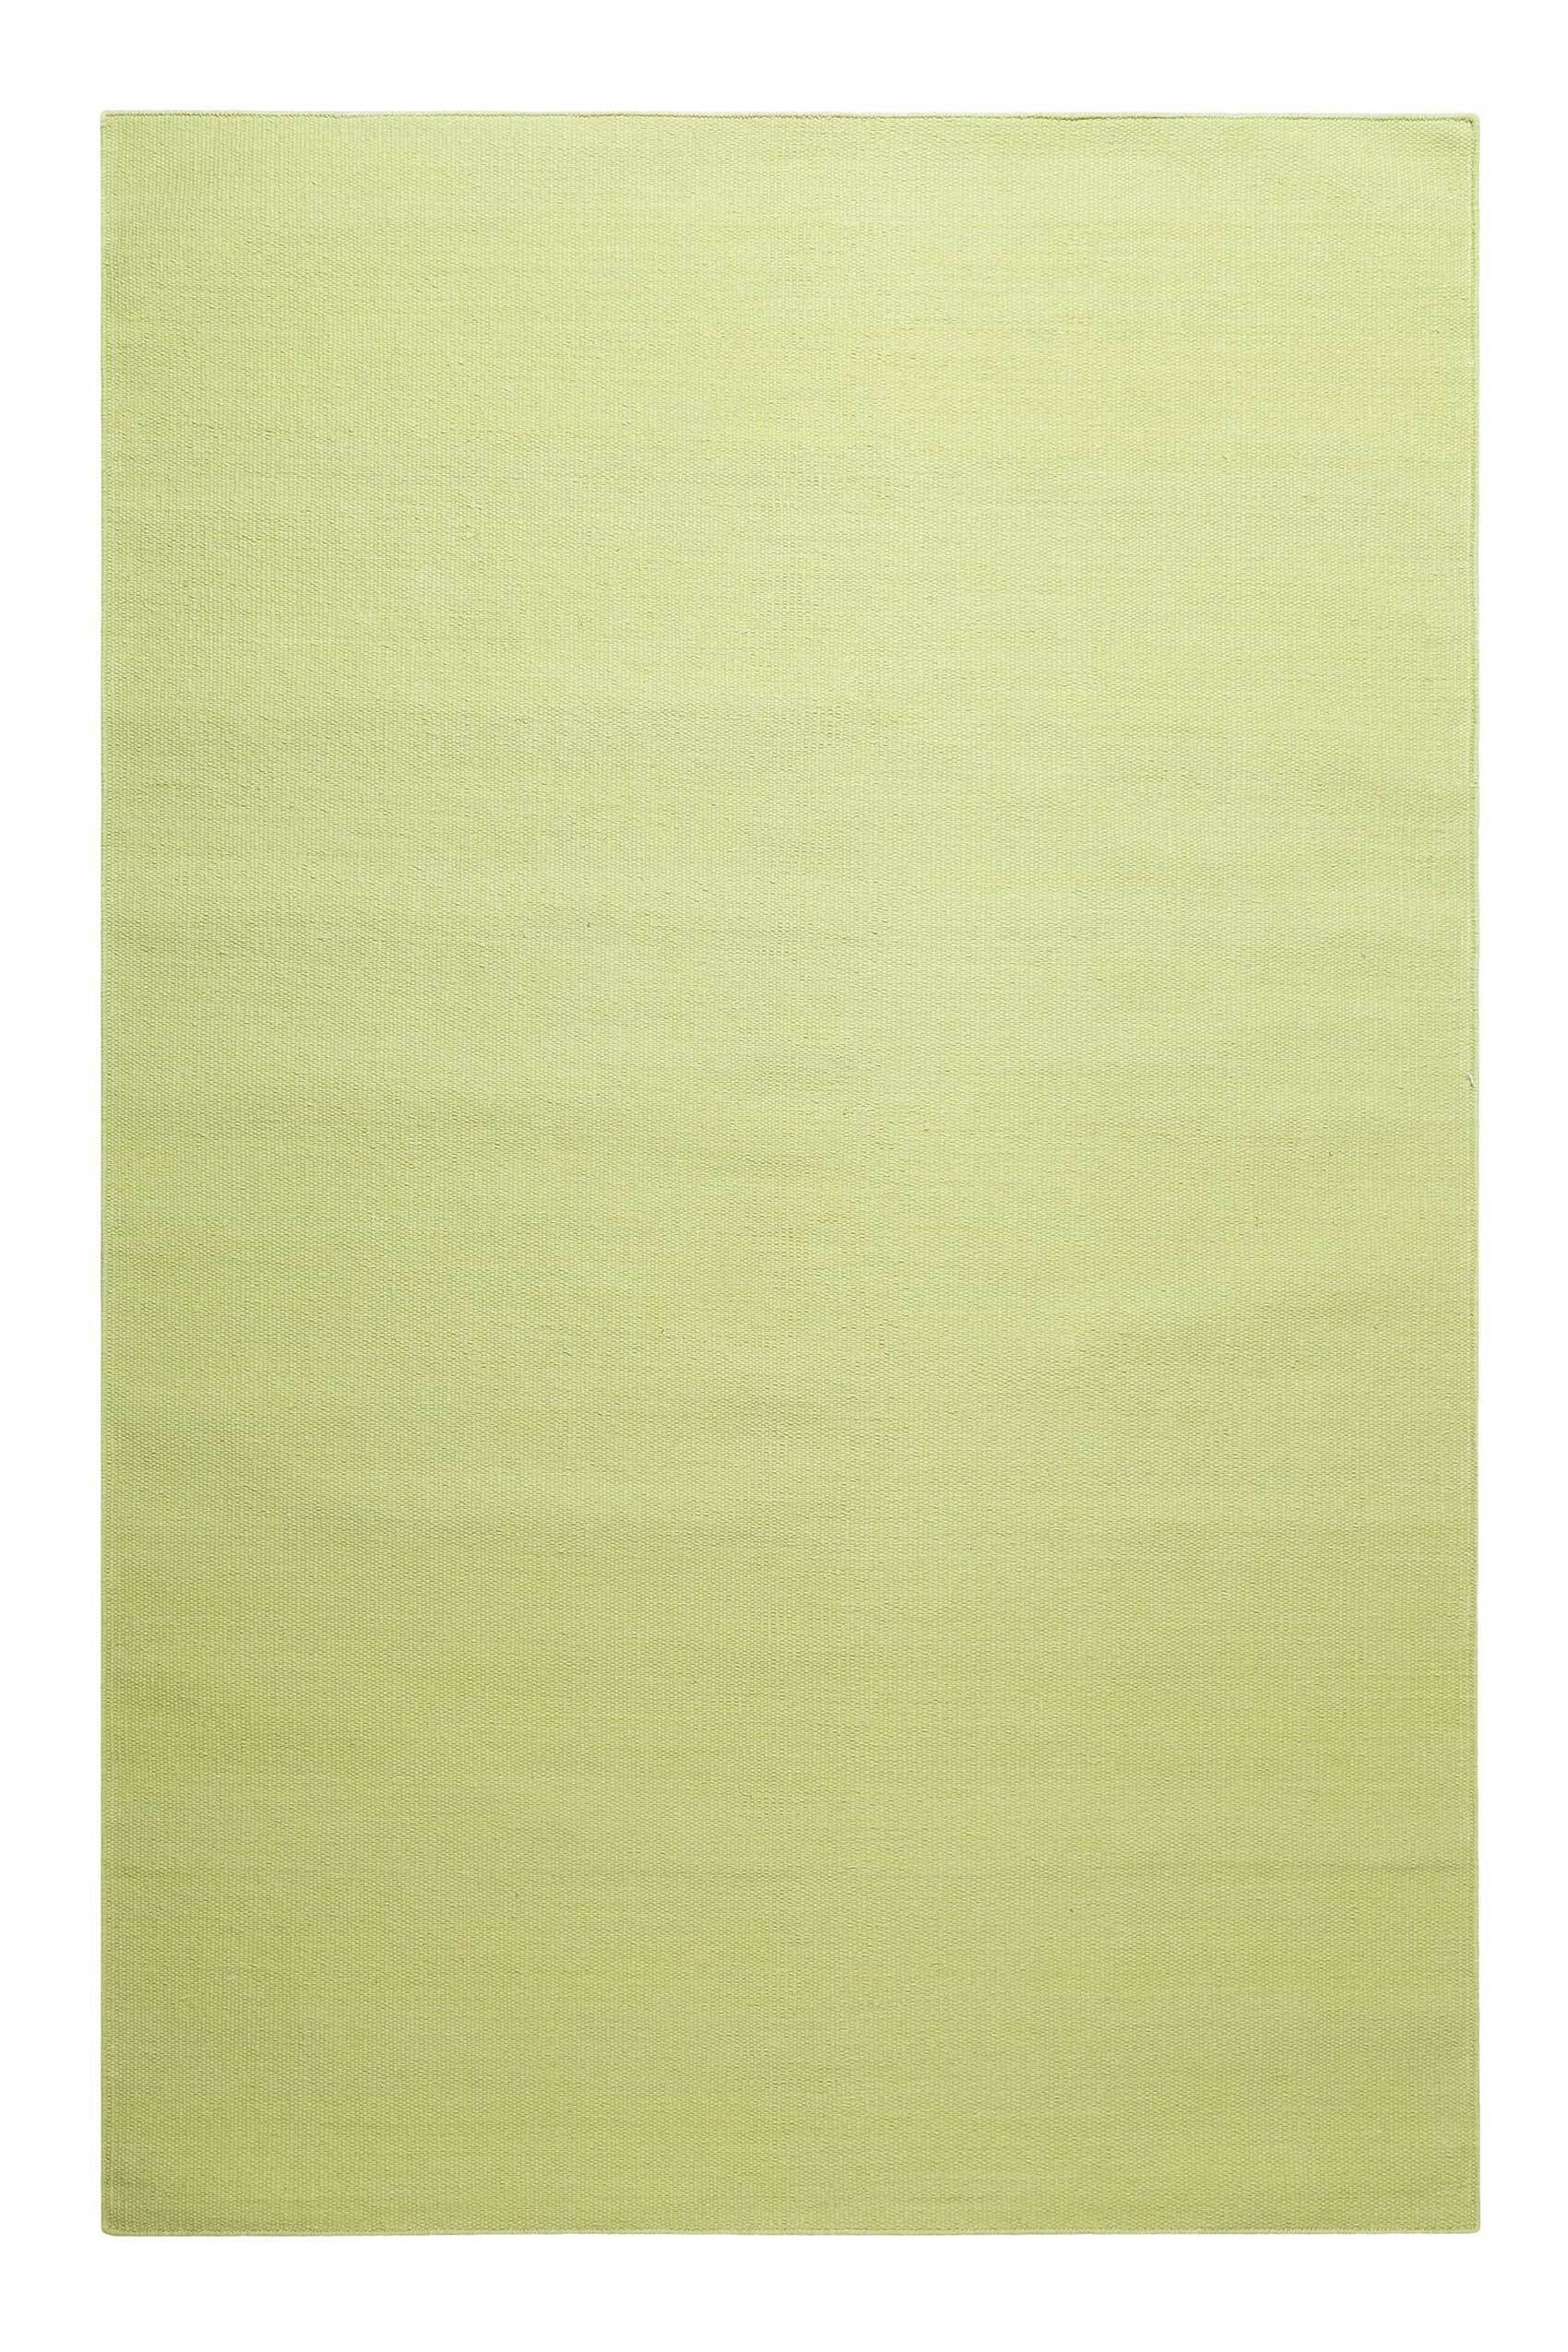 Teppich Nizza, Green Looop, rechteckig, Höhe: 5 mm, Baumwollteppich, einfarbig, pflegeleicht, Wohn-Schlafzimmer, 2x2,9 m